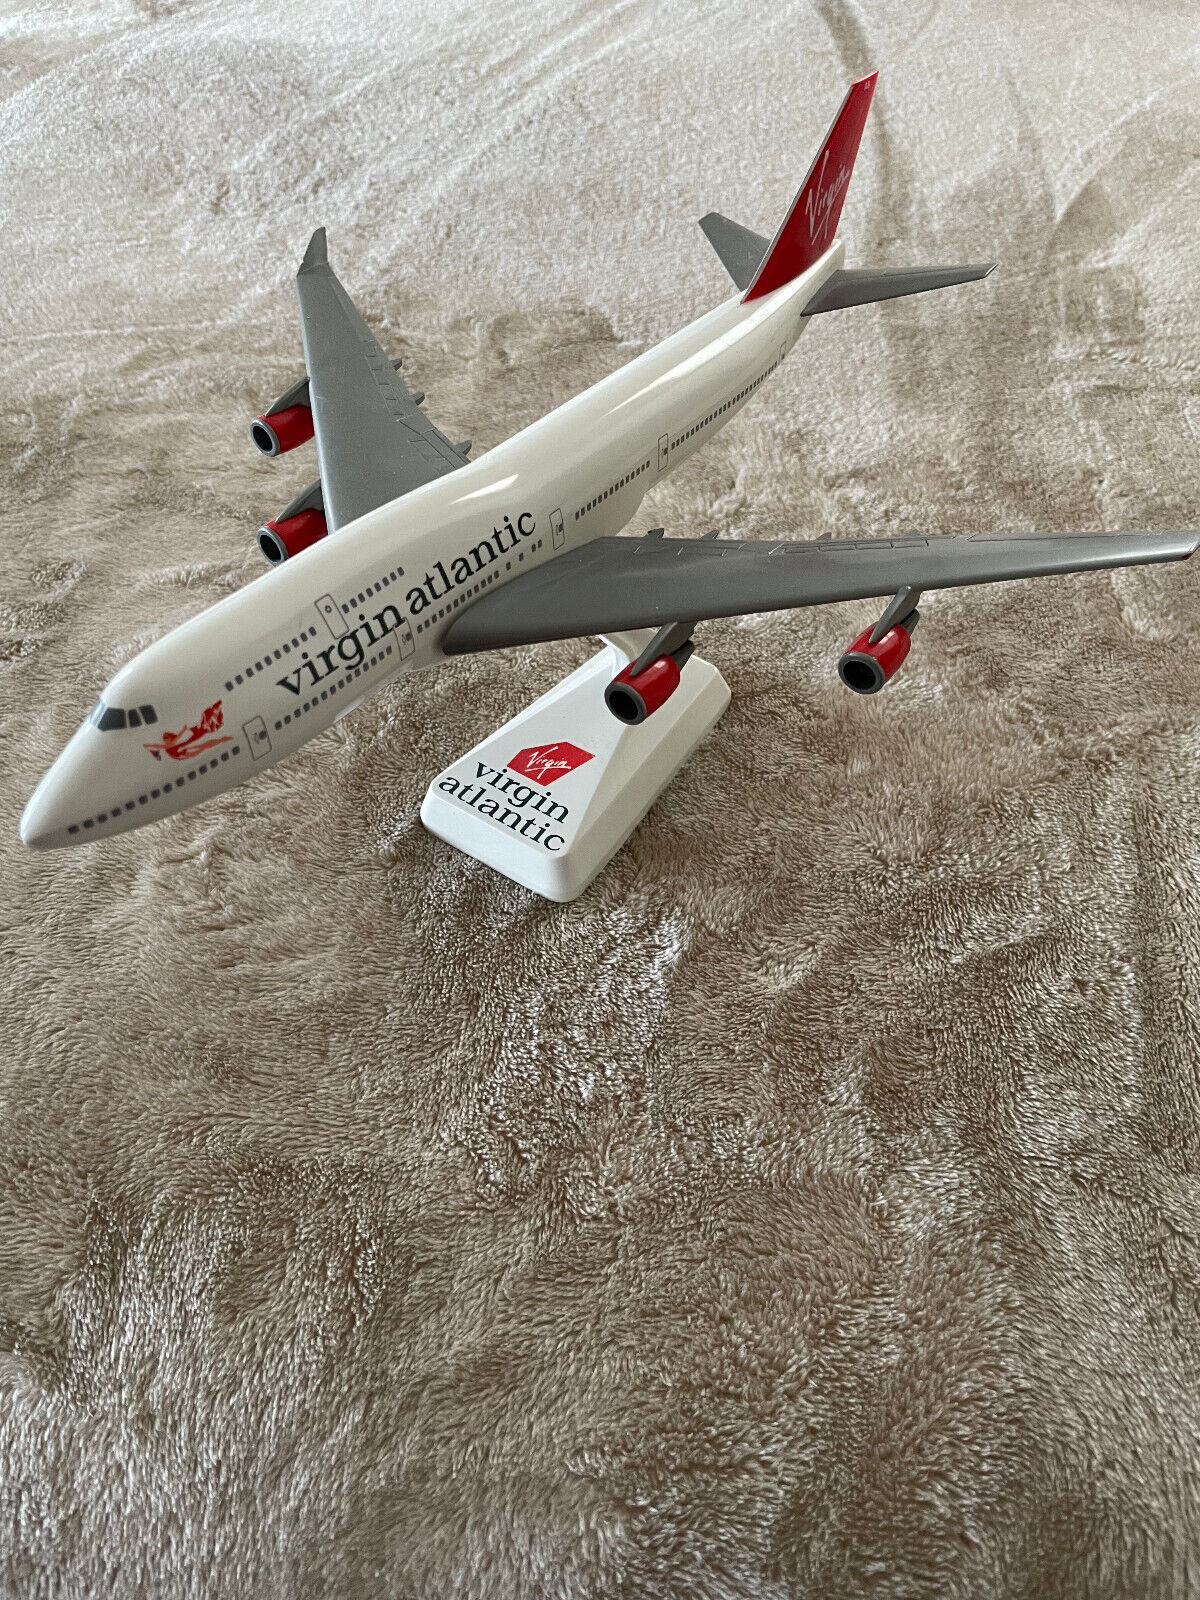 Virgin Atlantic Boeing 747 snapfit model airplane 1:250 scale